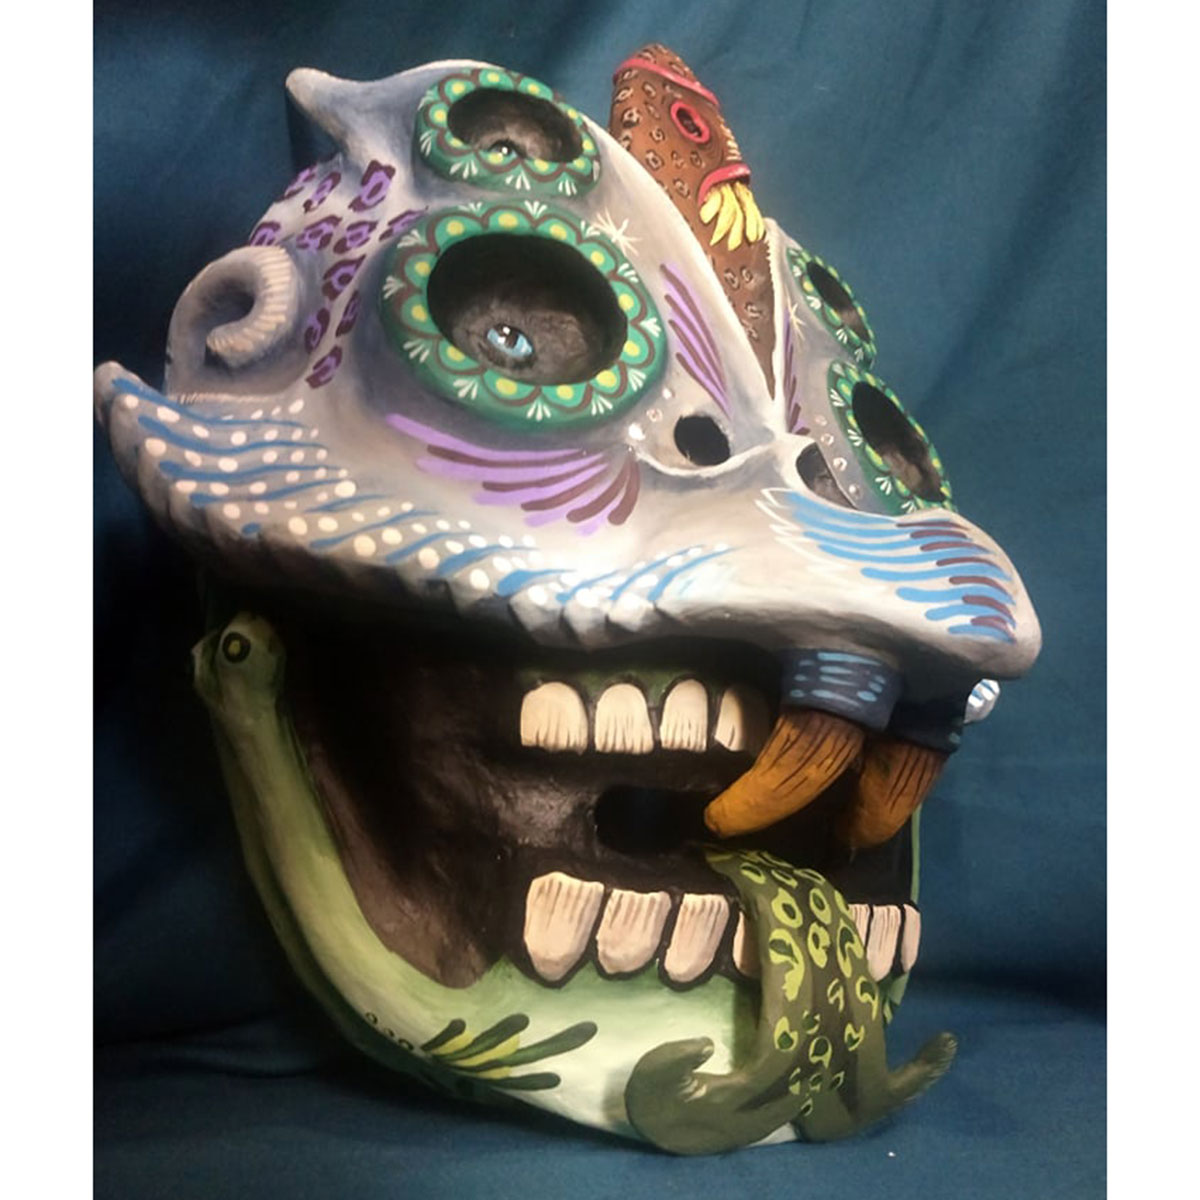 Cartoneria (Mexican Paper Mache) Isaias Alejandro Morales Delgado: Handmade Wearable Mask – Surgimiento (Emergence) Alebrijes